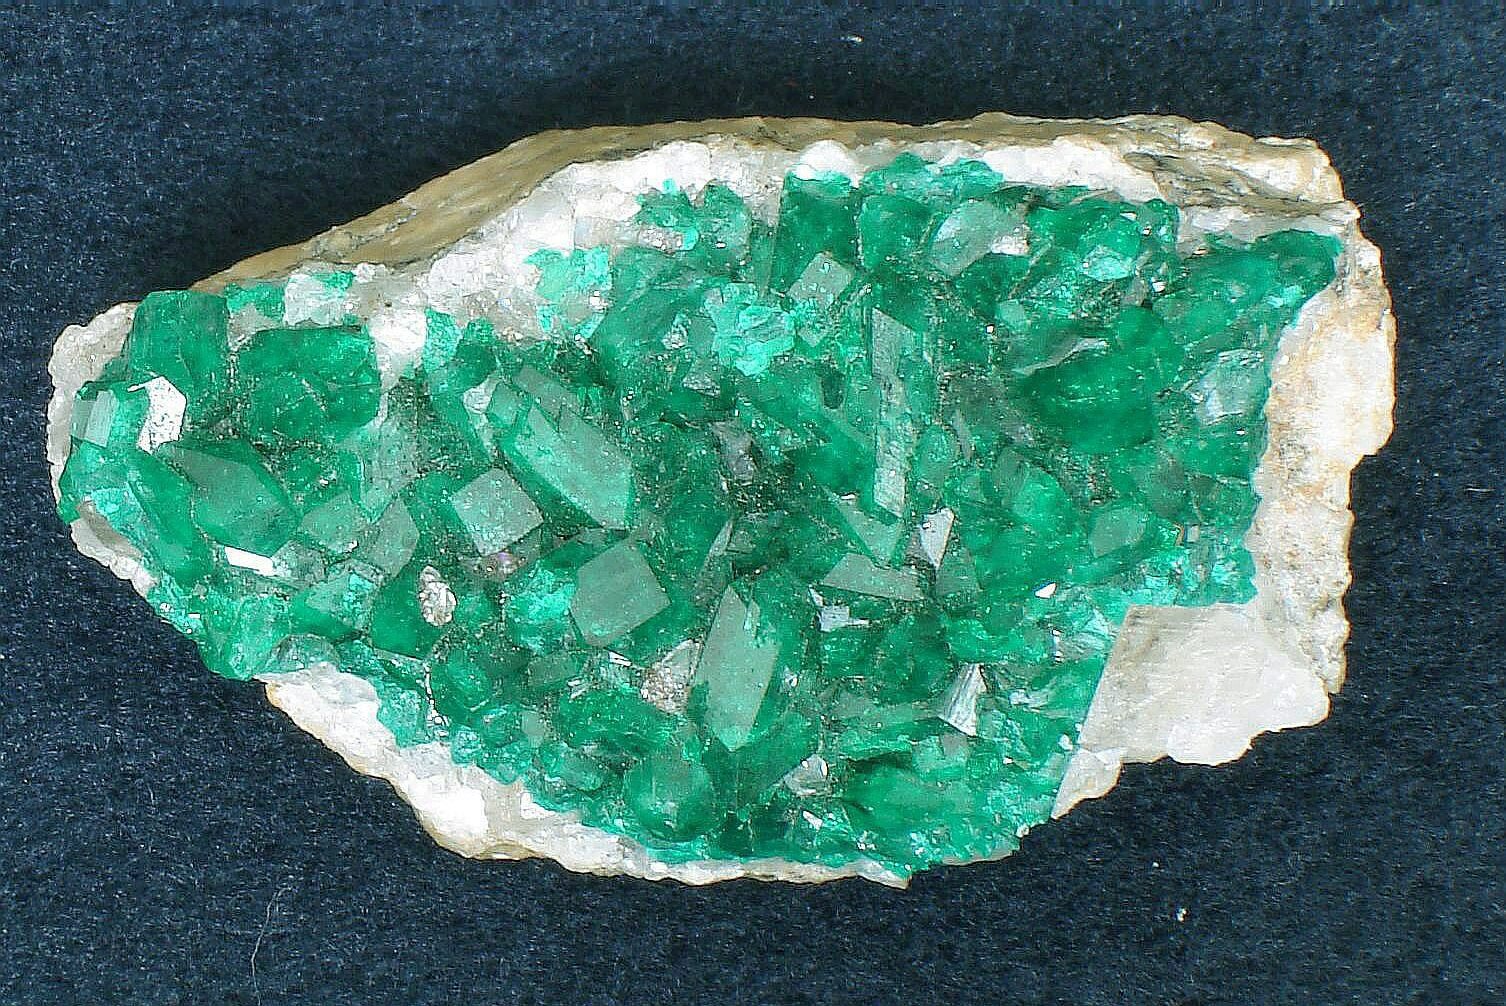 Zdjęcie ukazuje zielone, drobne kryształy. Mają zróżnicowane kształty. Znajdują się na powierzchni białego kamienia.  